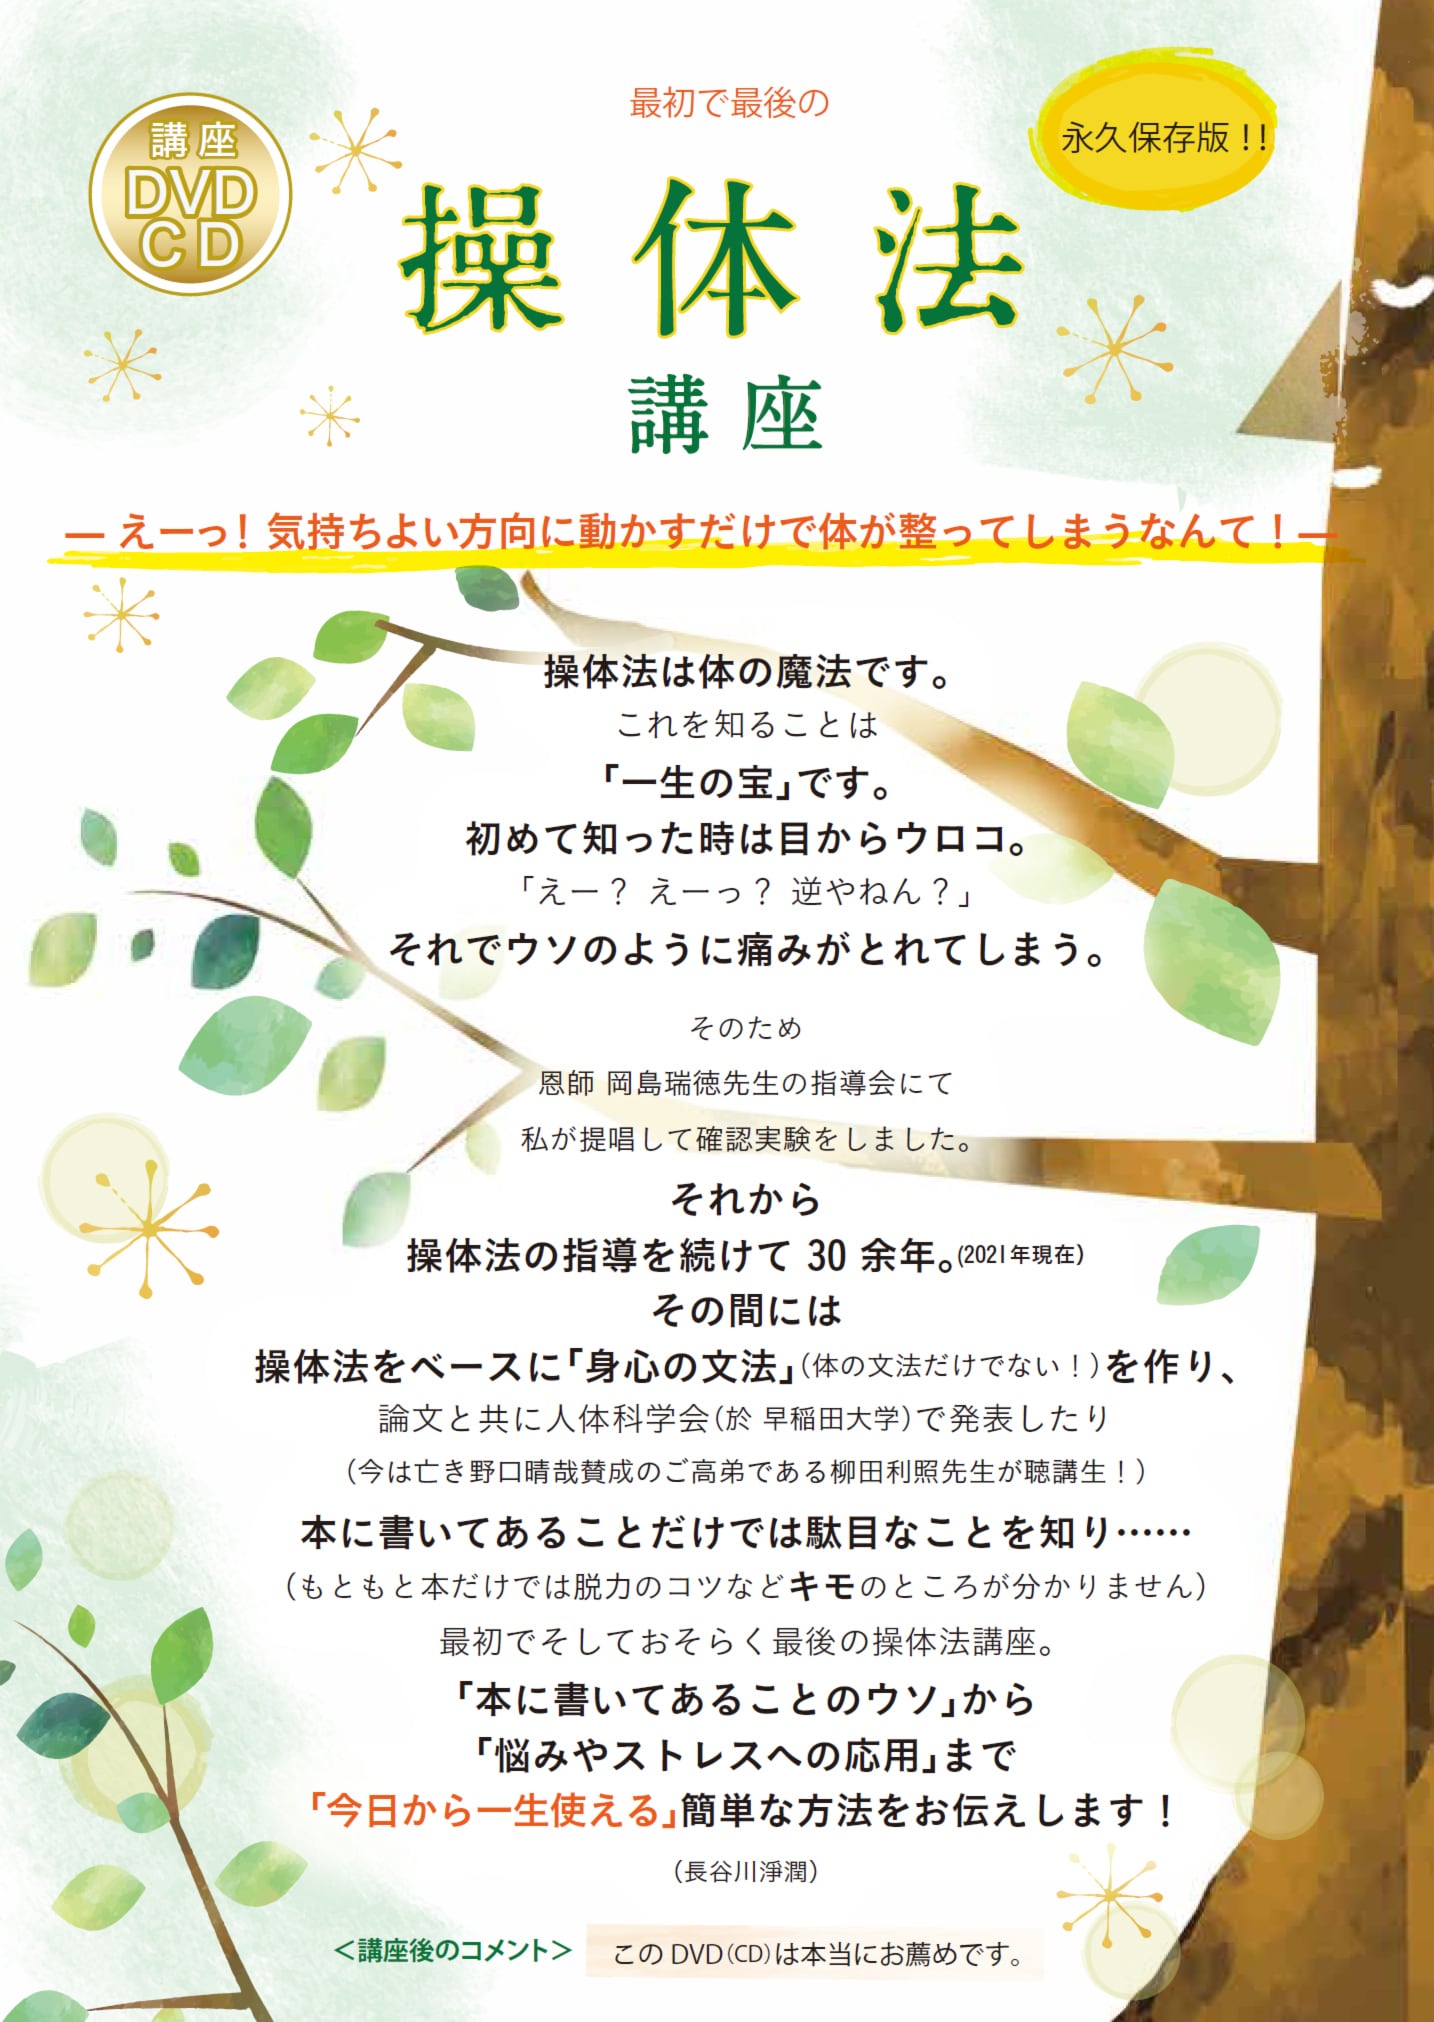 DVD/CD「操体法講座」 | 氣道オンラインショップ powered by BASE